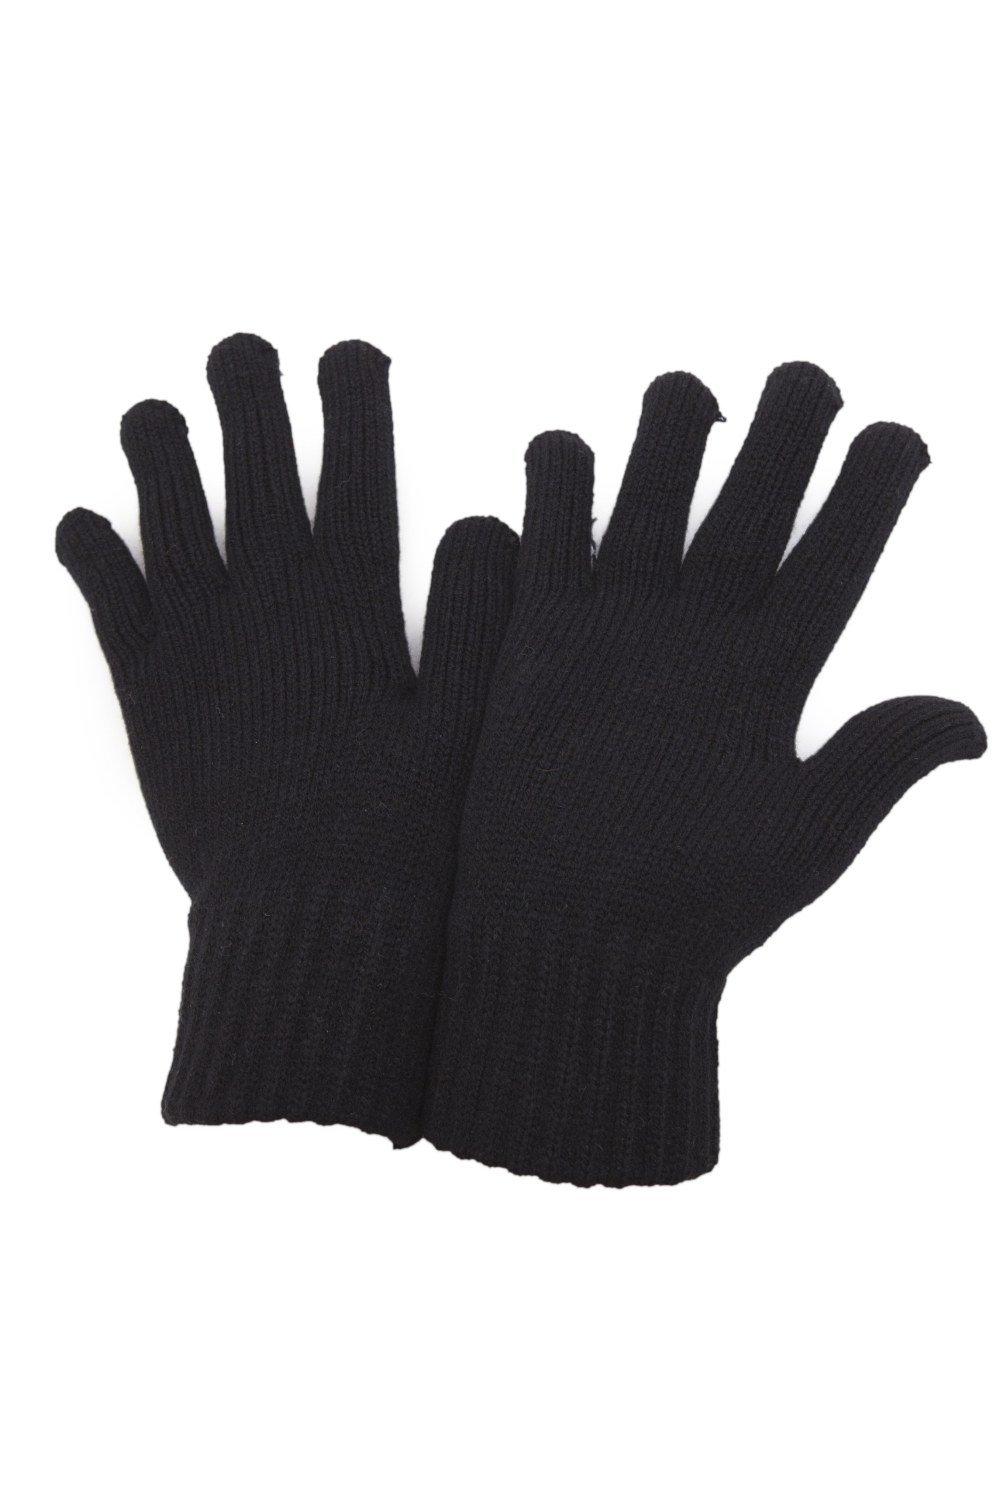 РАСПРОСТРАНЕНИЕ - Зимние перчатки Universal Textiles, черный распродажа термовязаные зимние перчатки universal textiles черный